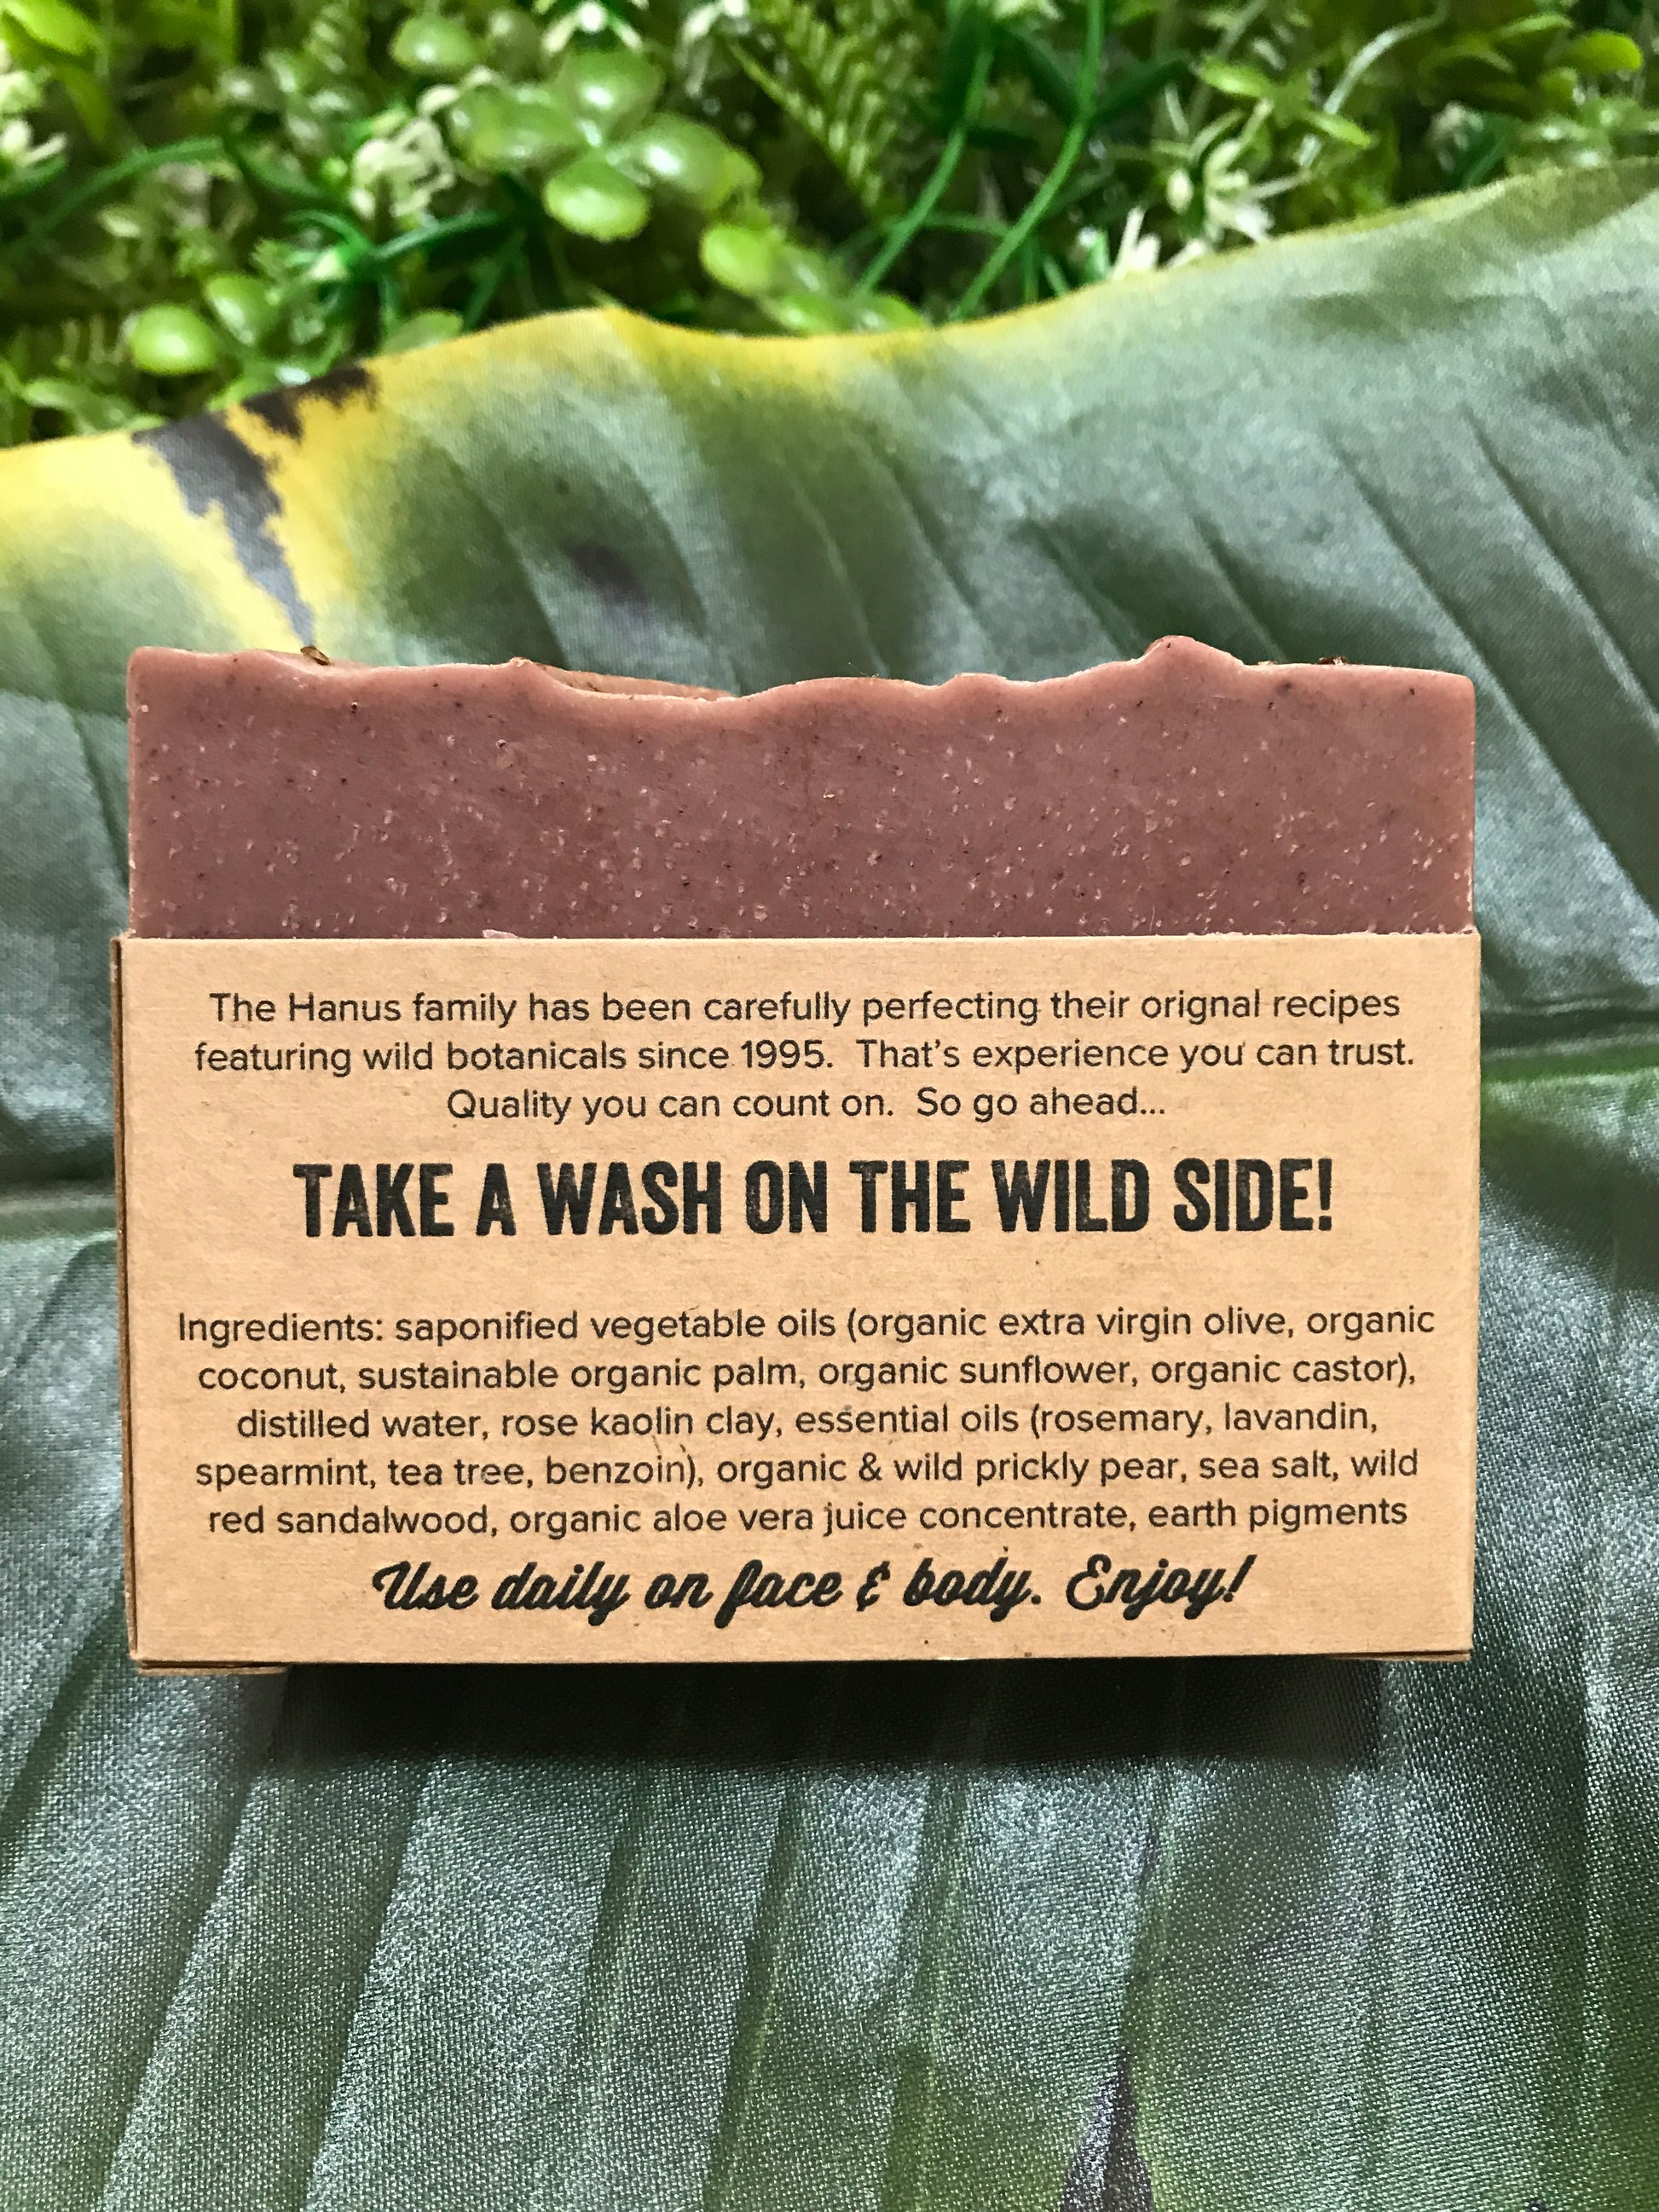 Prickly Pear Soap | A Wild Soap Bar - InRugCo Studio & Gift Shop